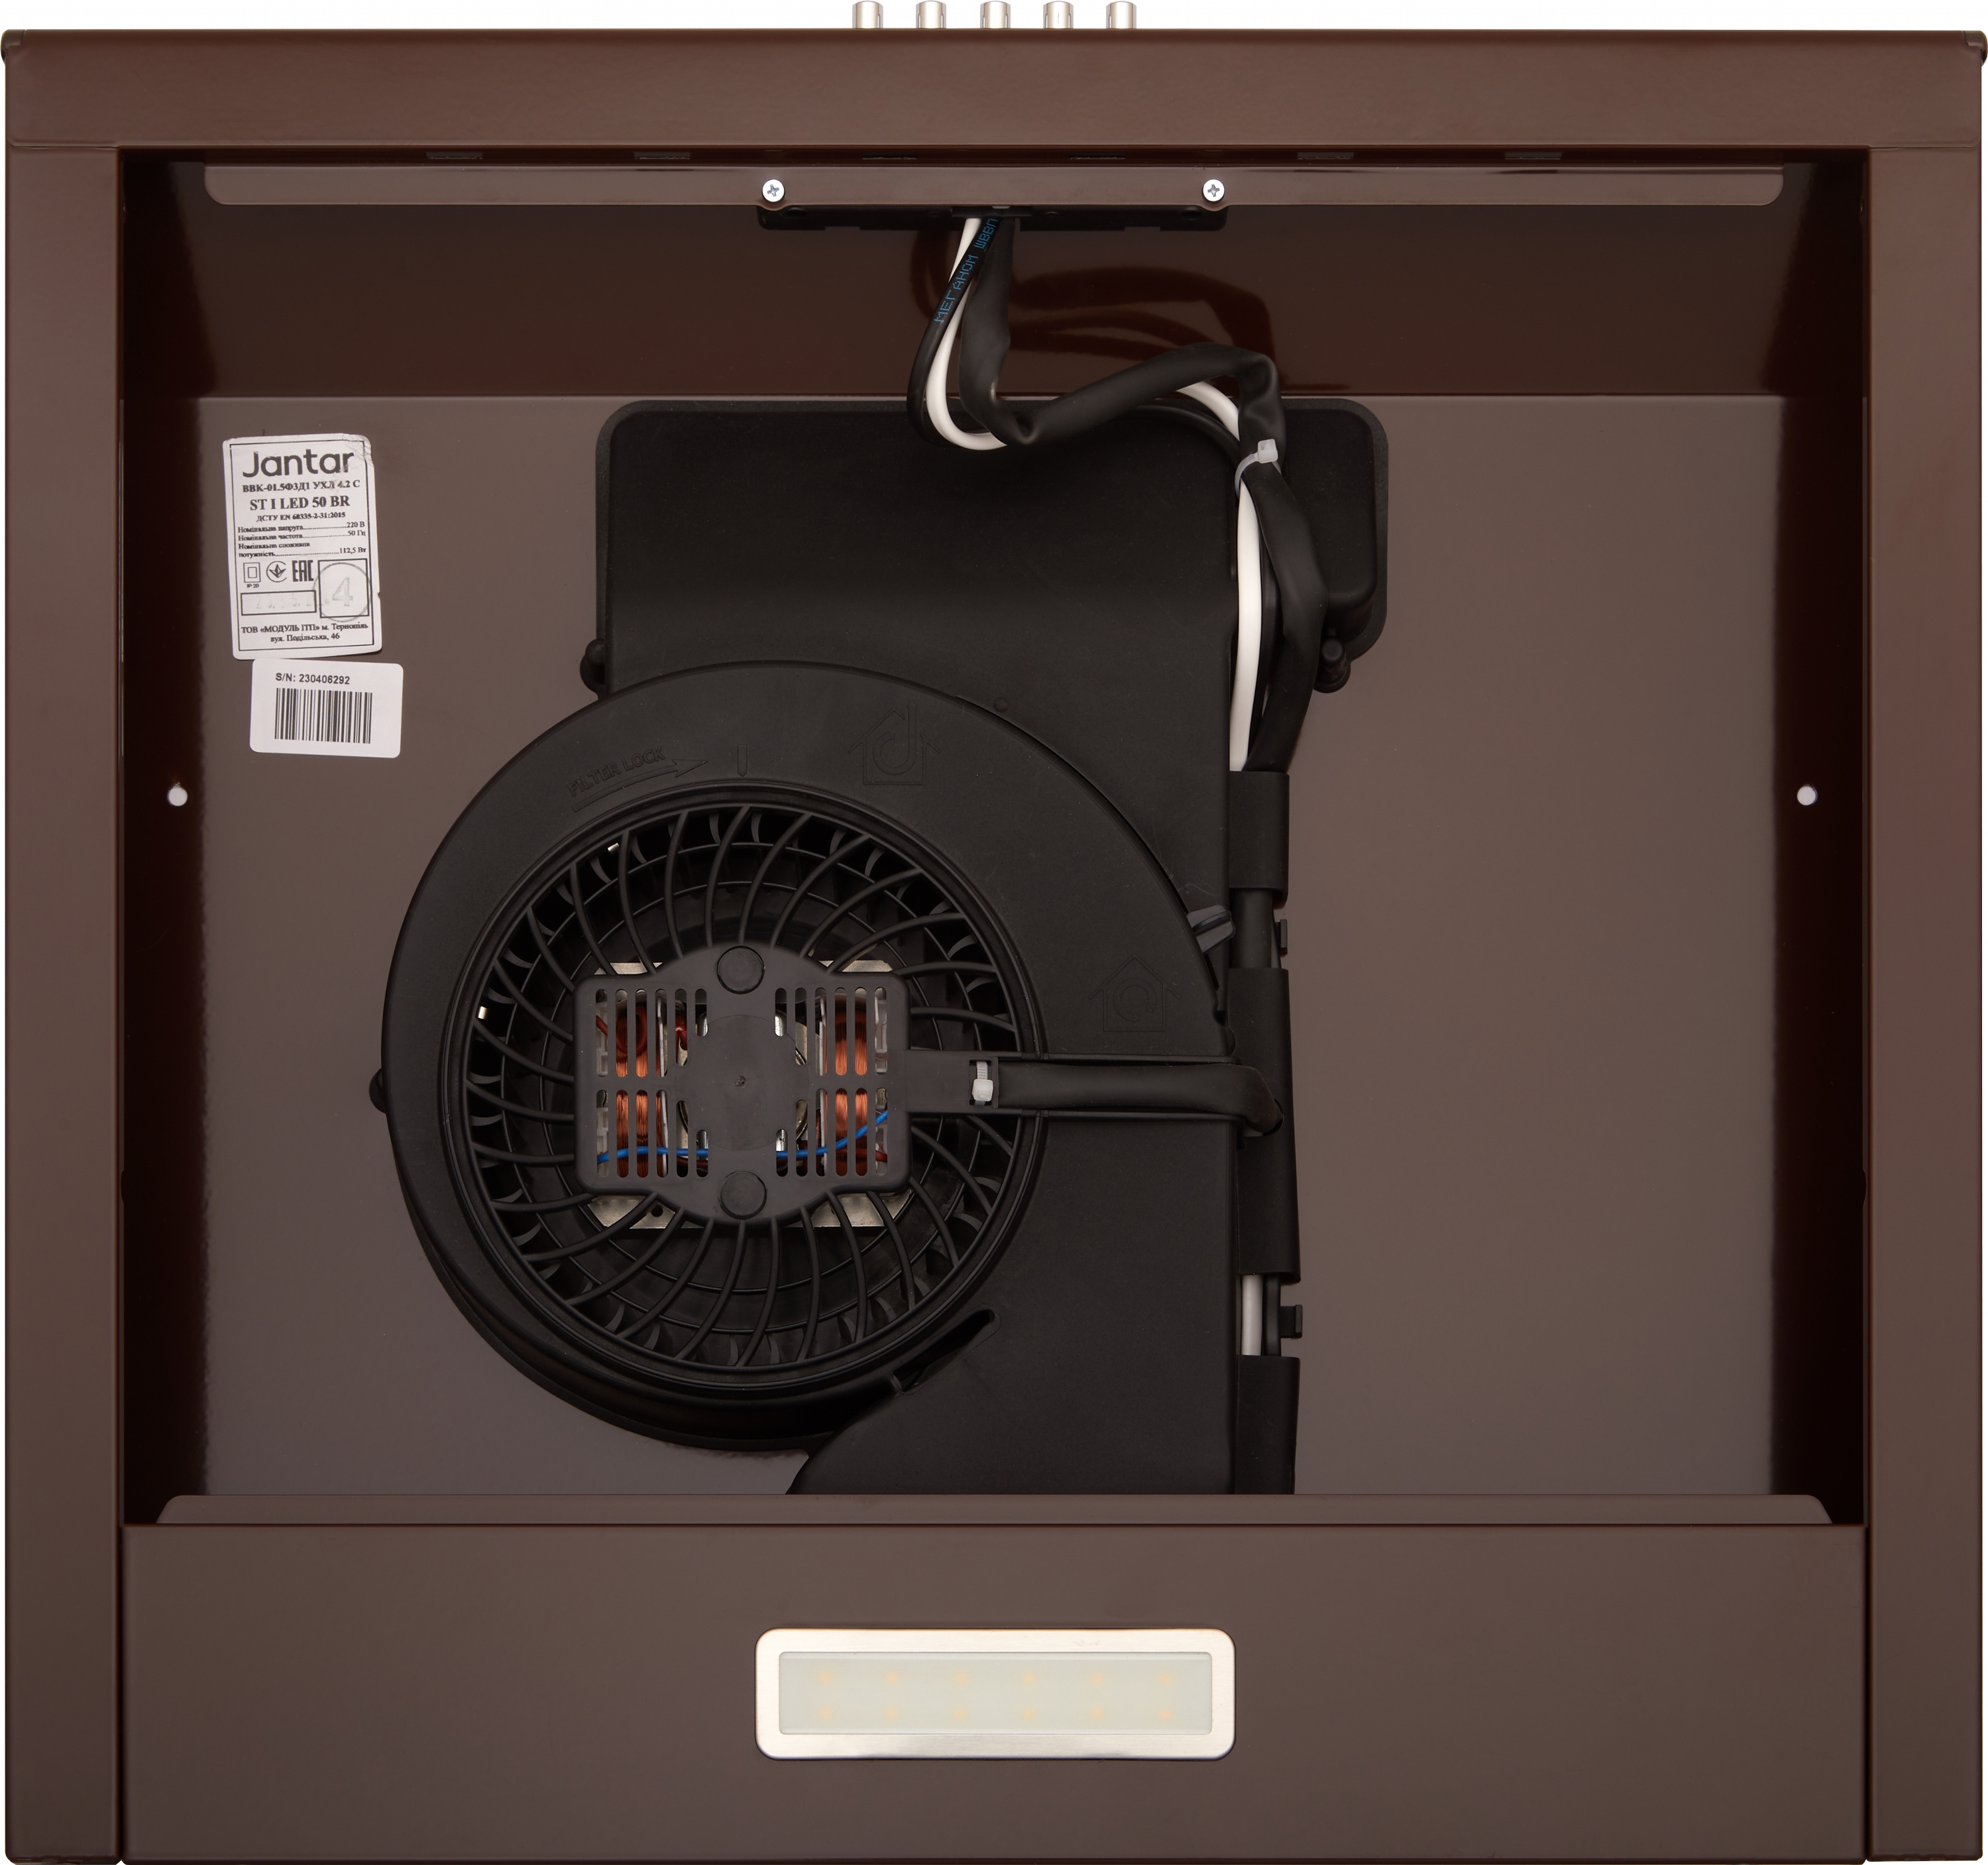 Кухонная вытяжка Jantar ST I LED 60 BR отзывы - изображения 5